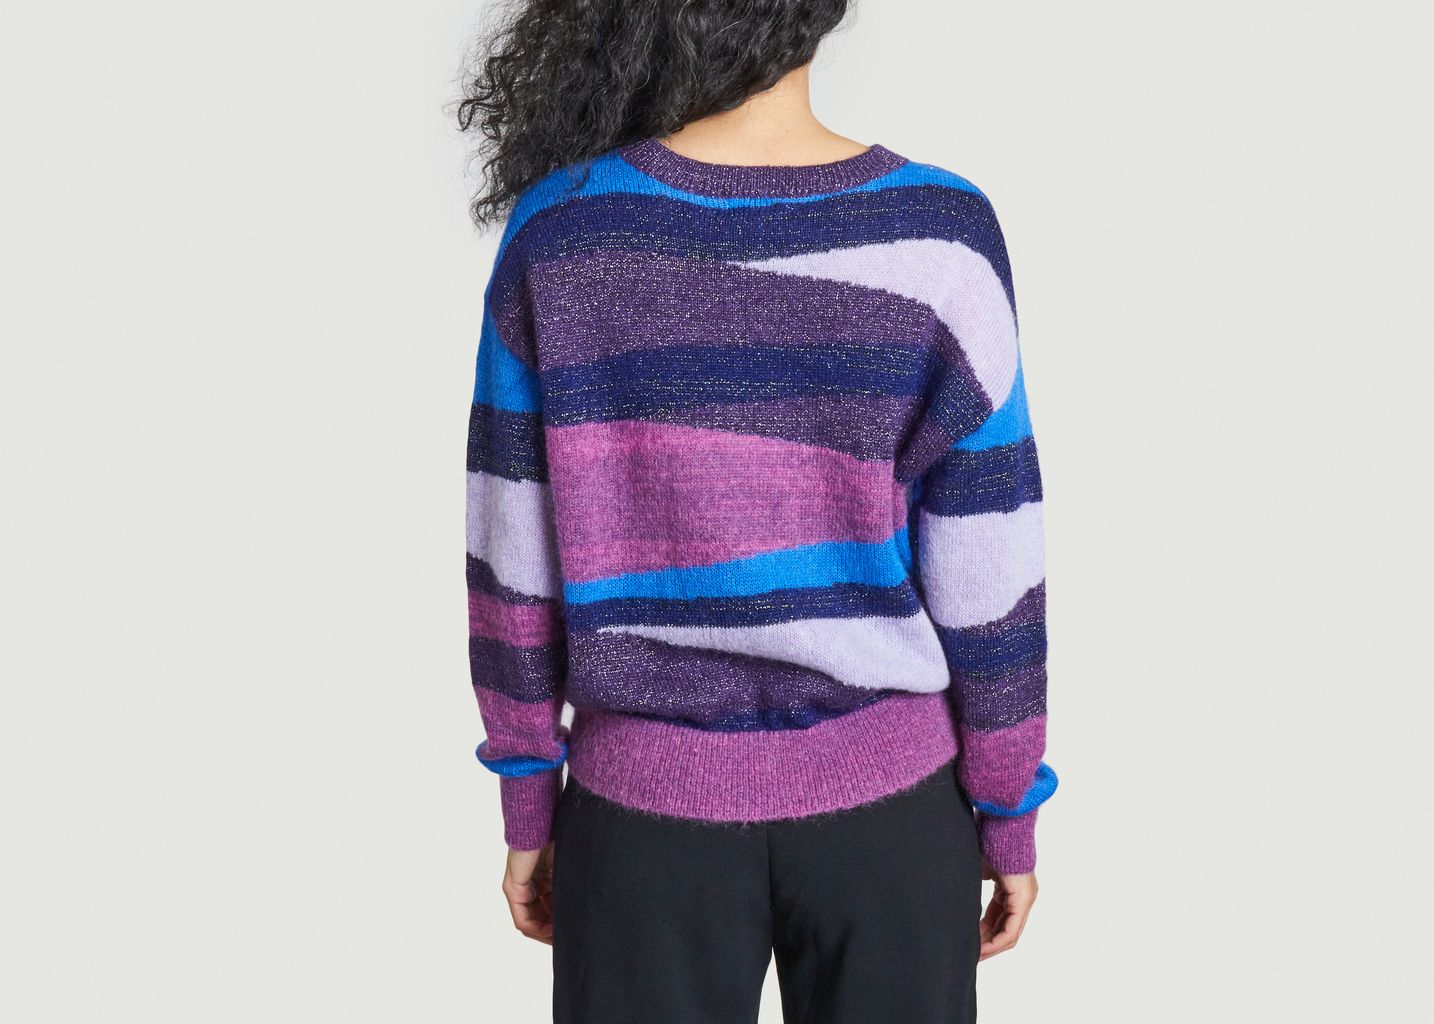 Presor sweater - Suncoo